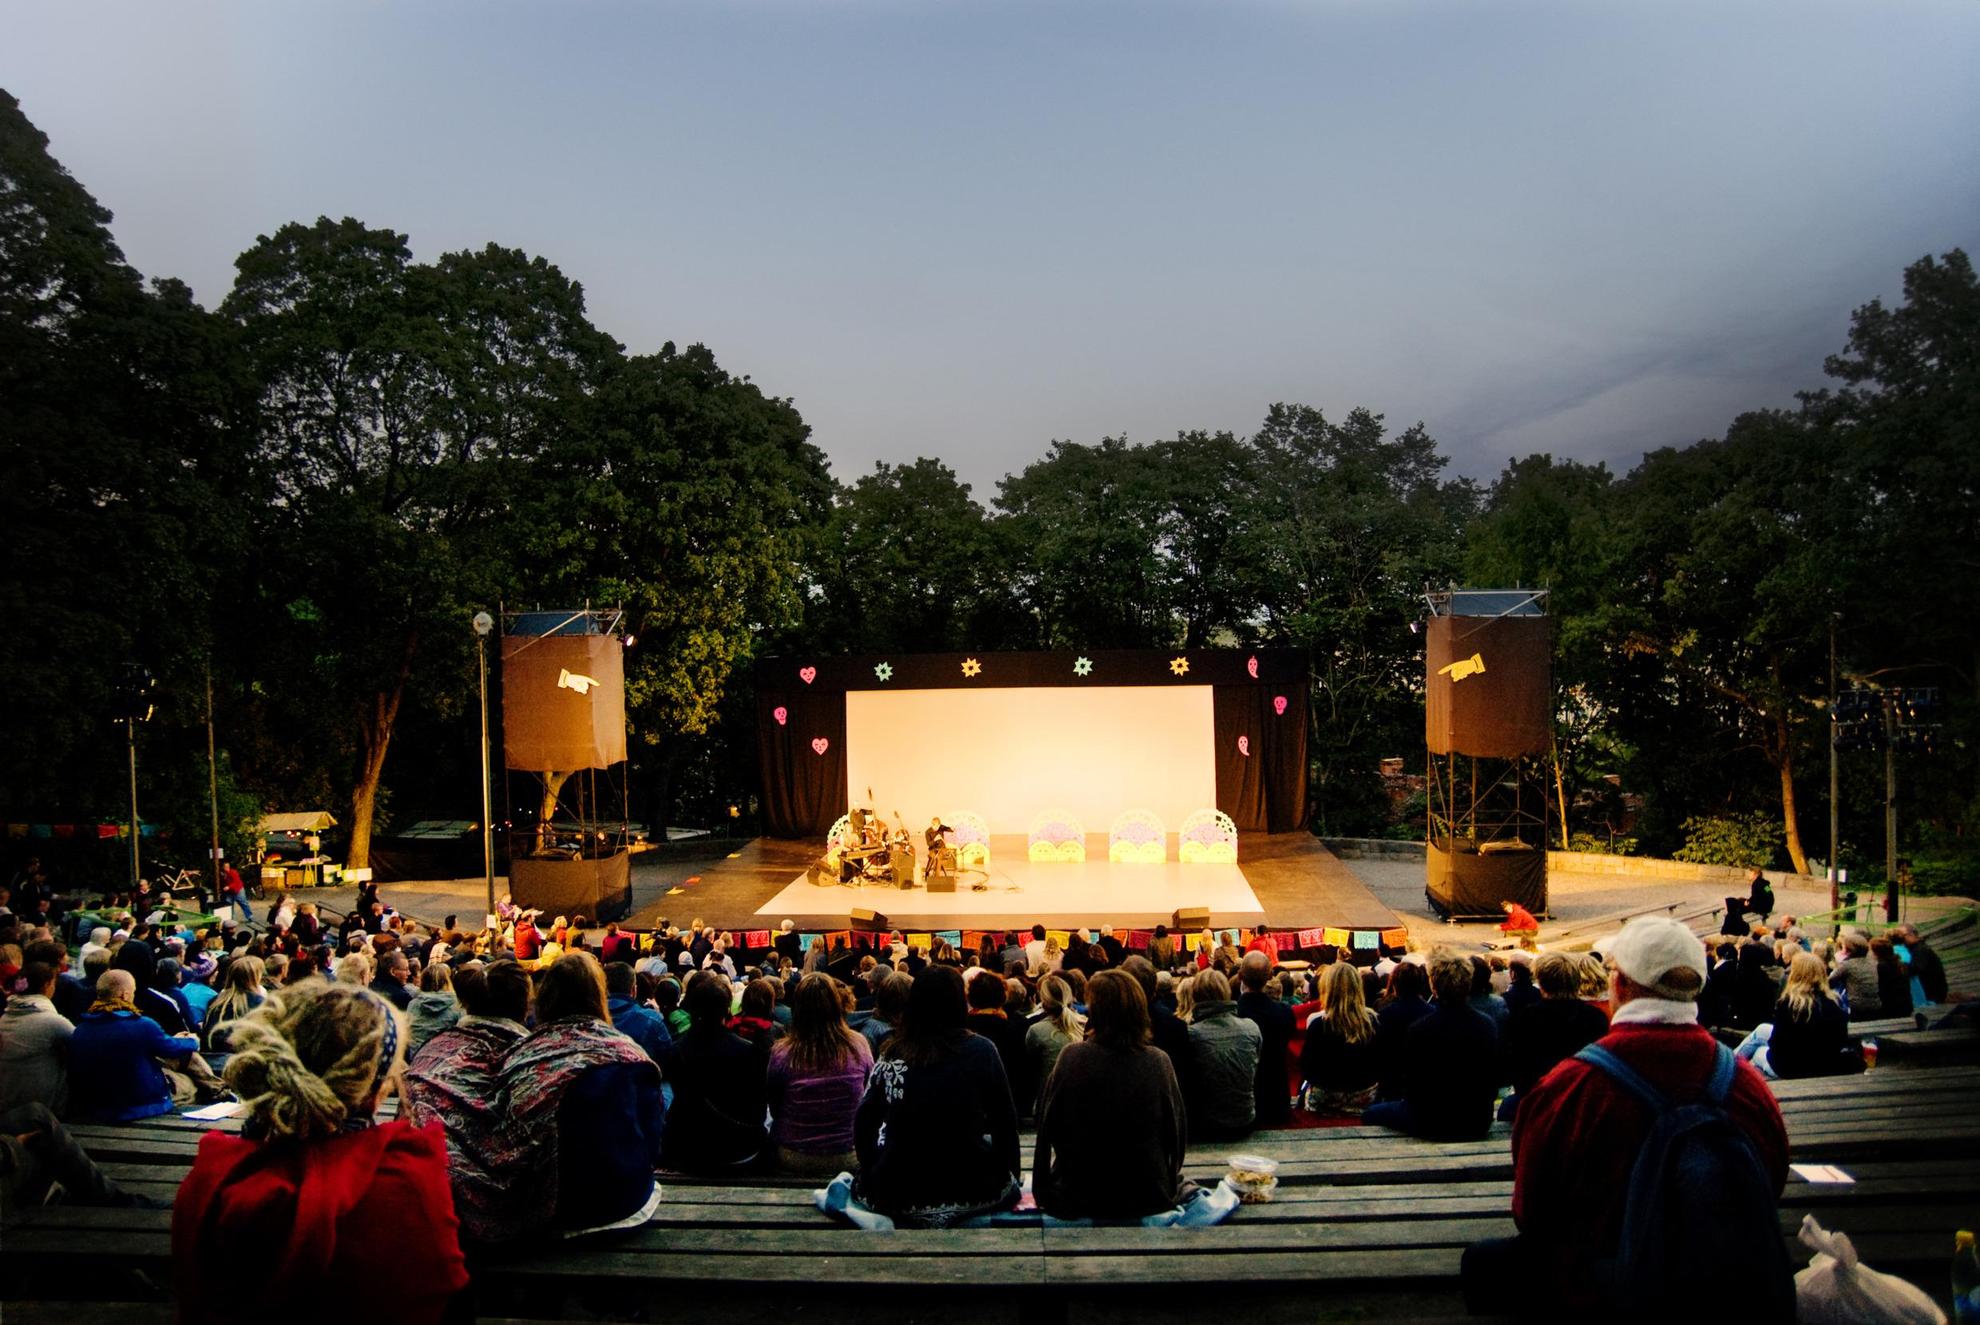 Le public assiste à une représentation théâtrale en plein air à Stockholm.